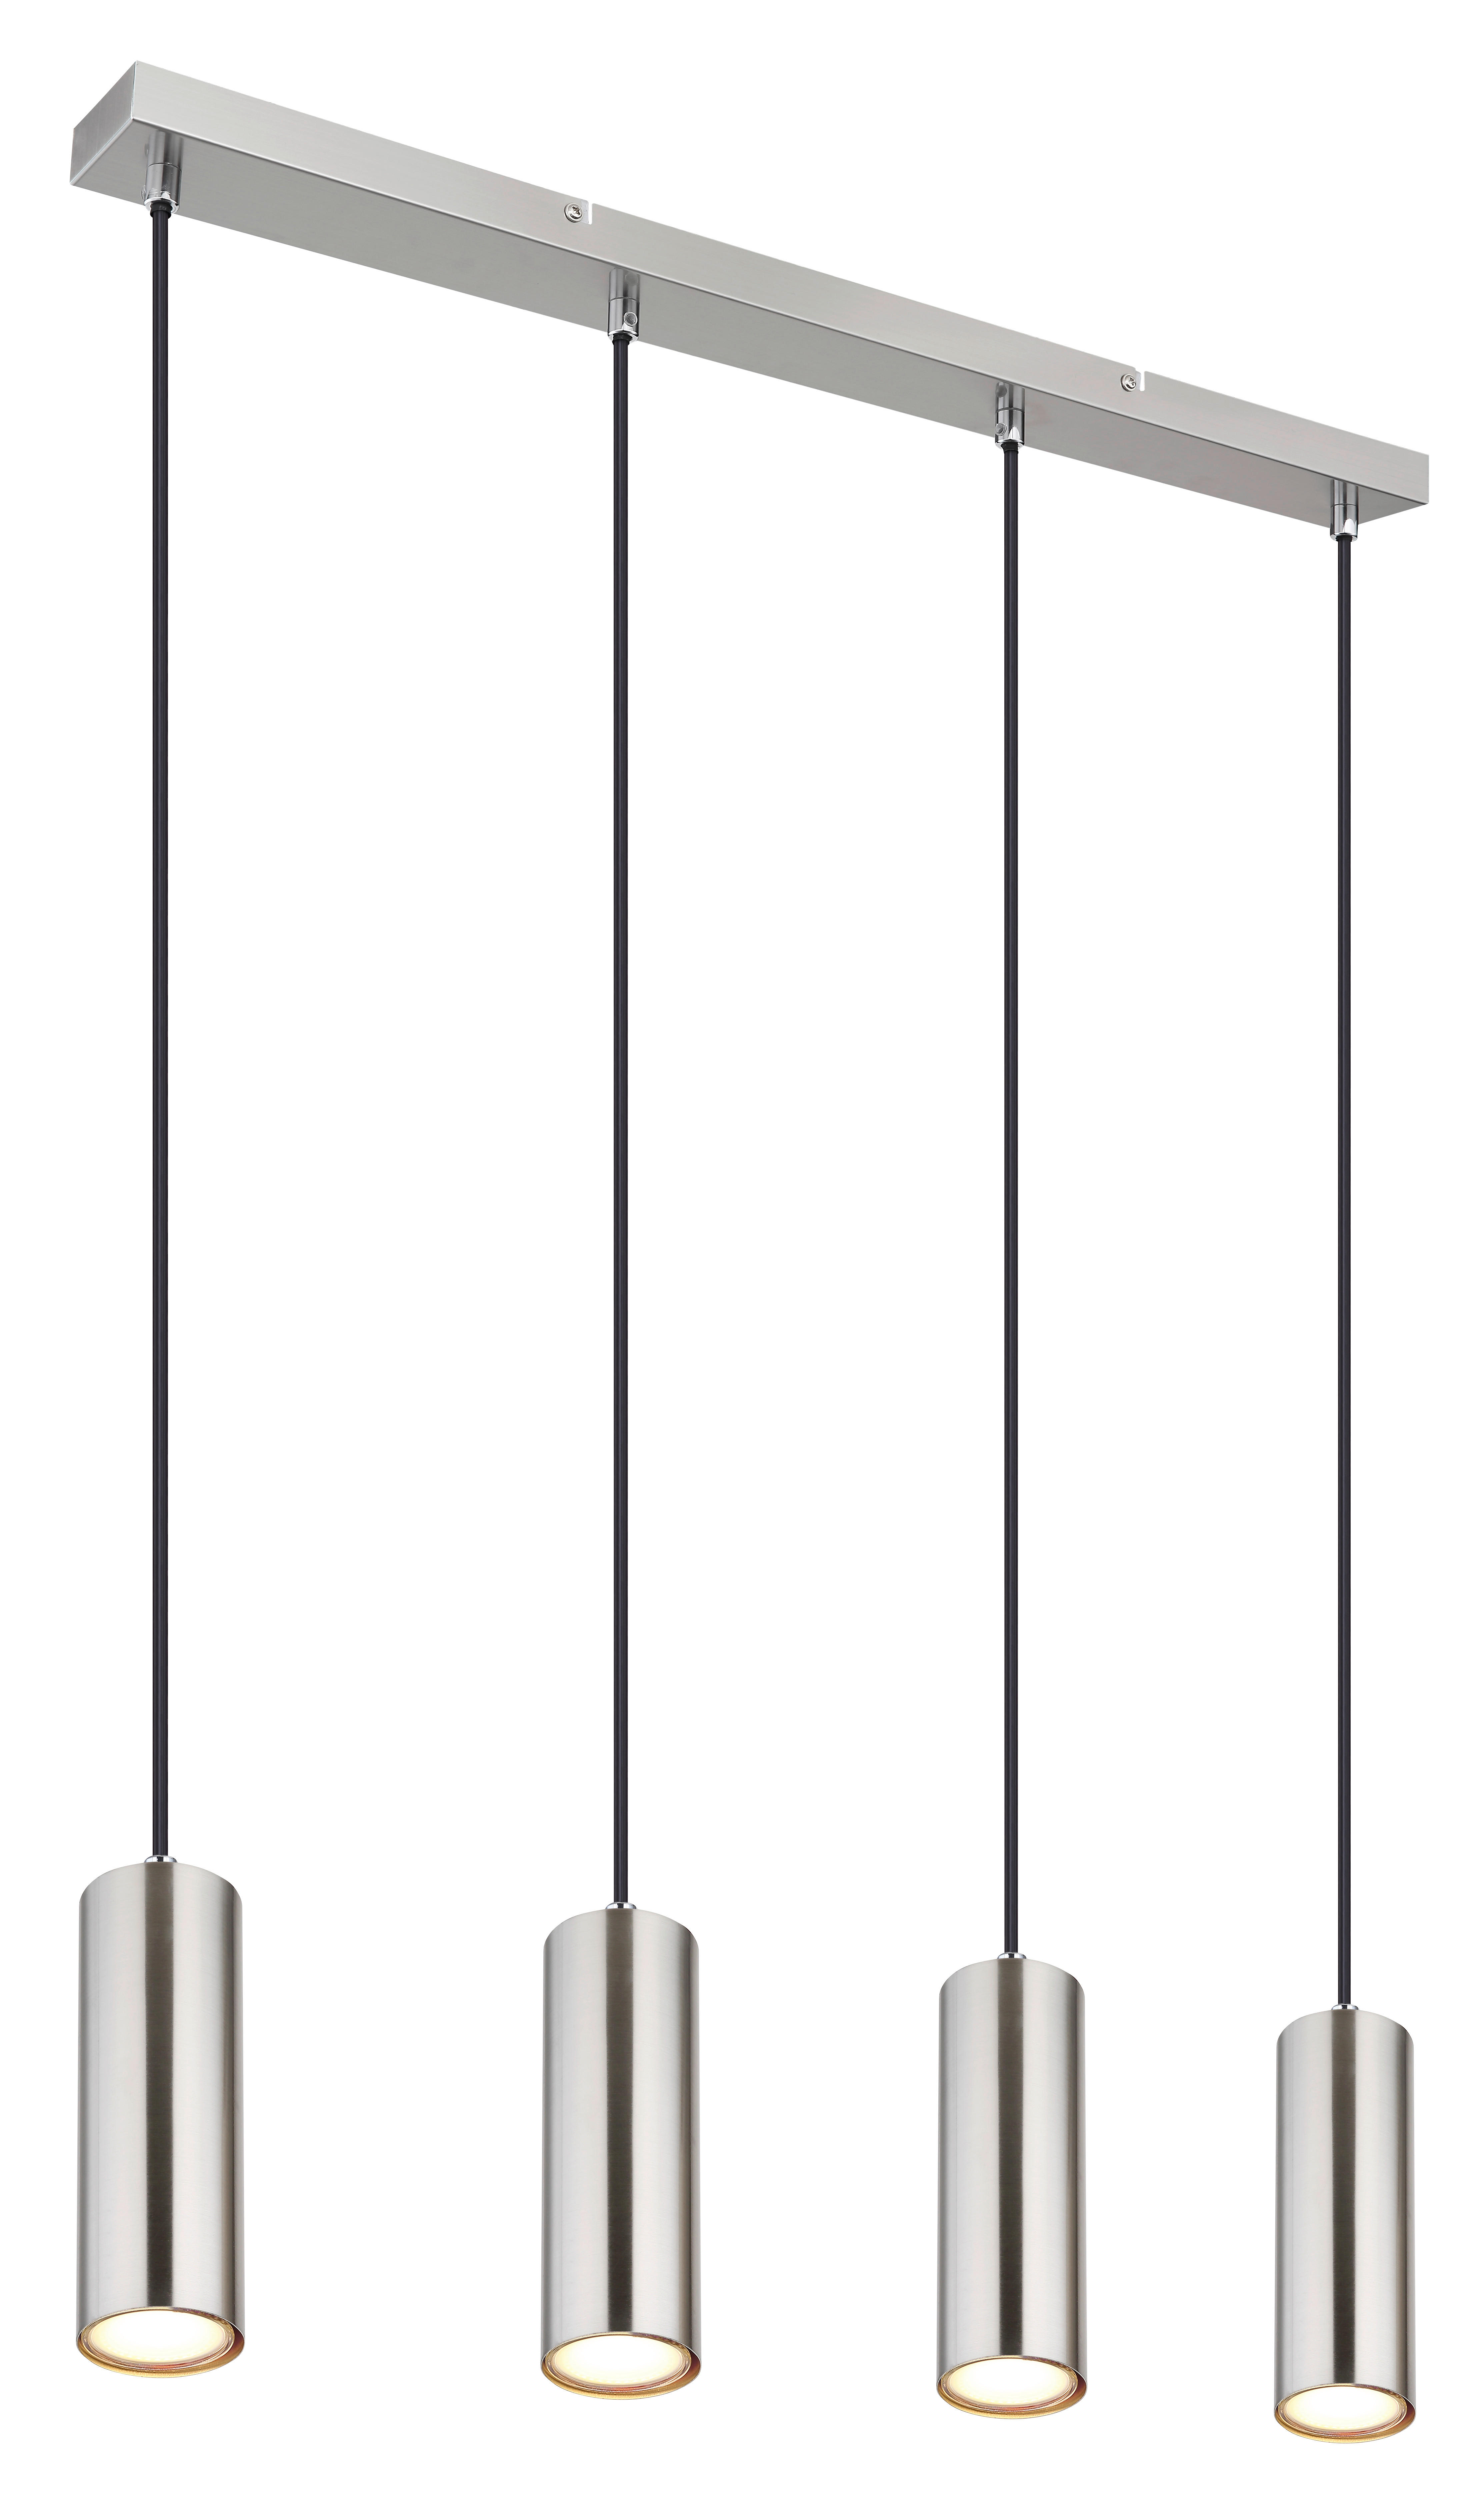 HÄNGELEUCHTE 65/6/120 cm   - Chromfarben, Design, Metall (65/6/120cm) - Globo